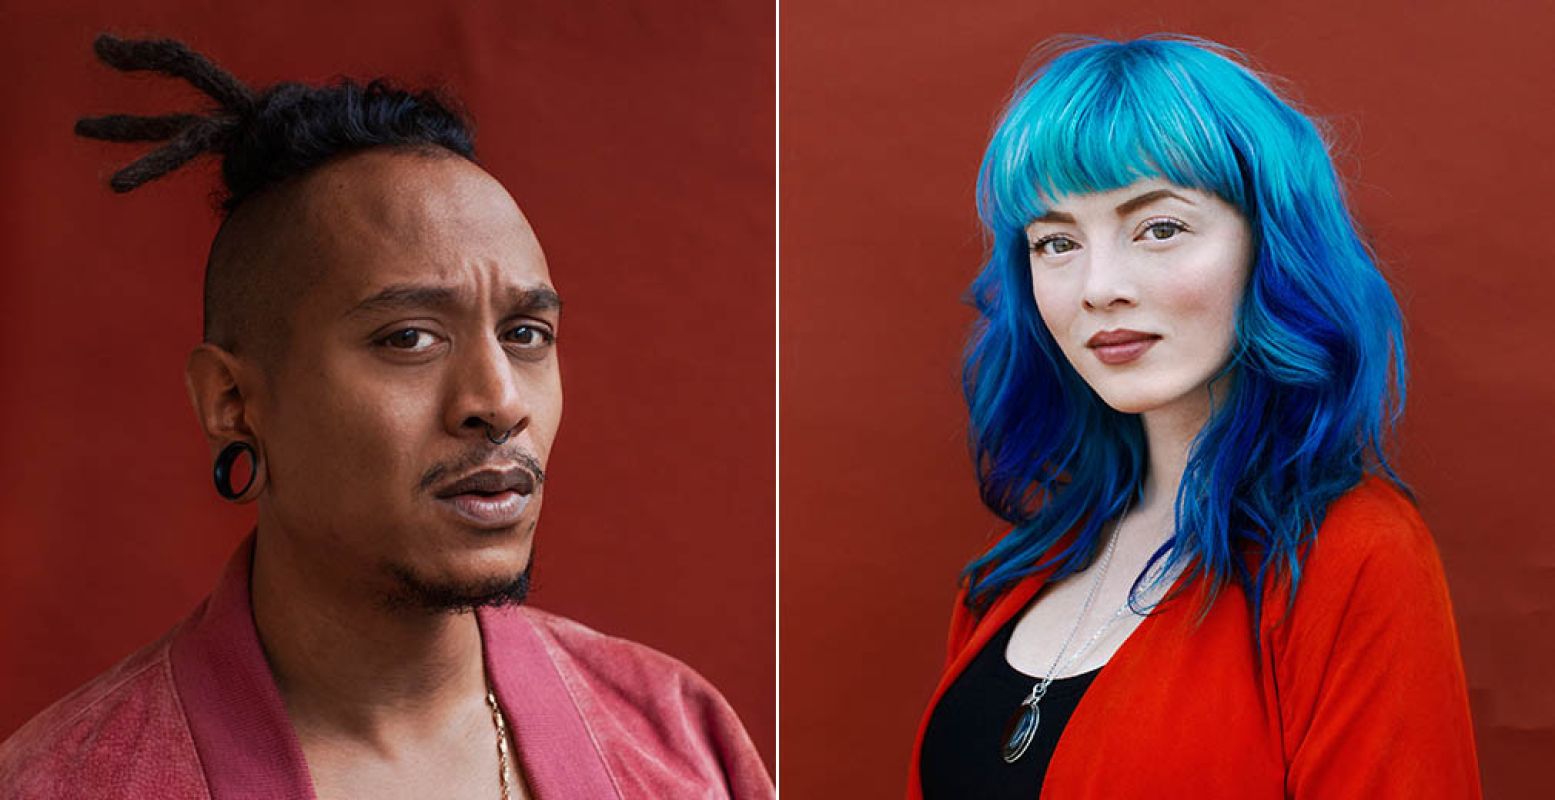 Links: Ook Stevens kapsel is te zien op het Good Hair Festival. Rechts: Estrella's haar bestaat uit meerdere tinten blauw. Foto's: Sharon Jane.